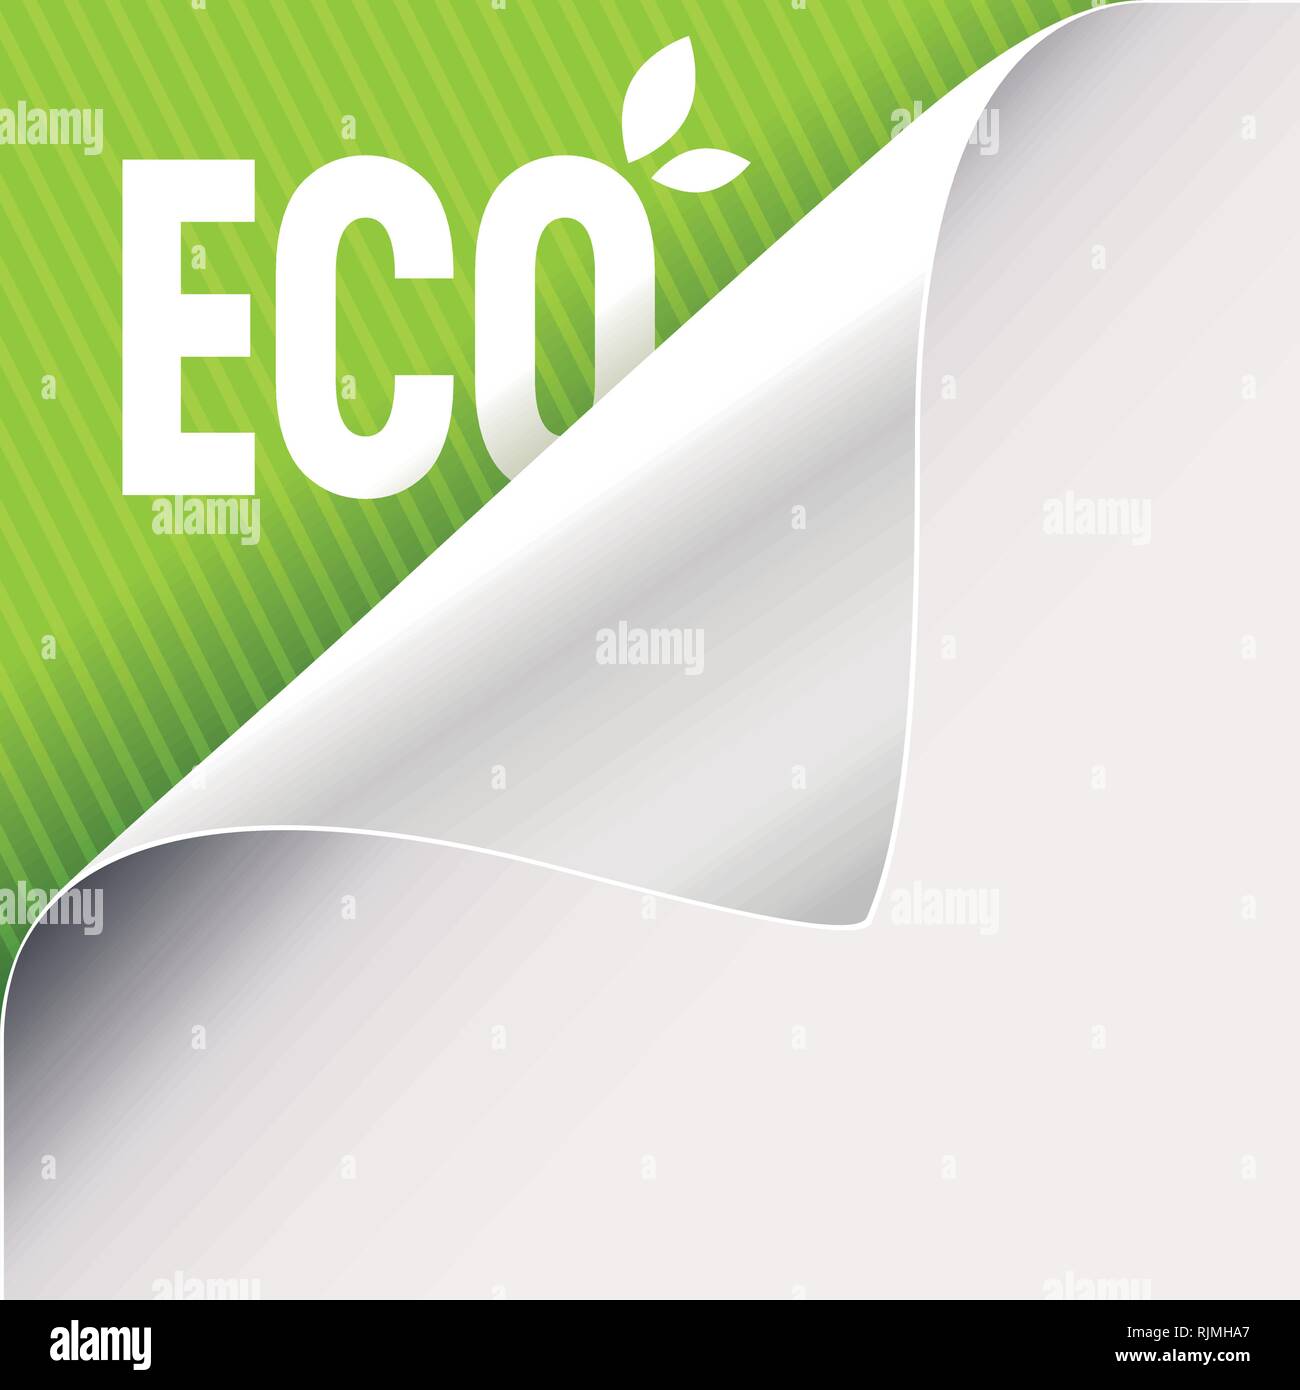 Gewellte Ecke des weißen Papiers auf der Grünen Linken oberen Winkel Hintergrund. Eco slogan Zeichen mit Blättern. Vector Illustration. Stock Vektor